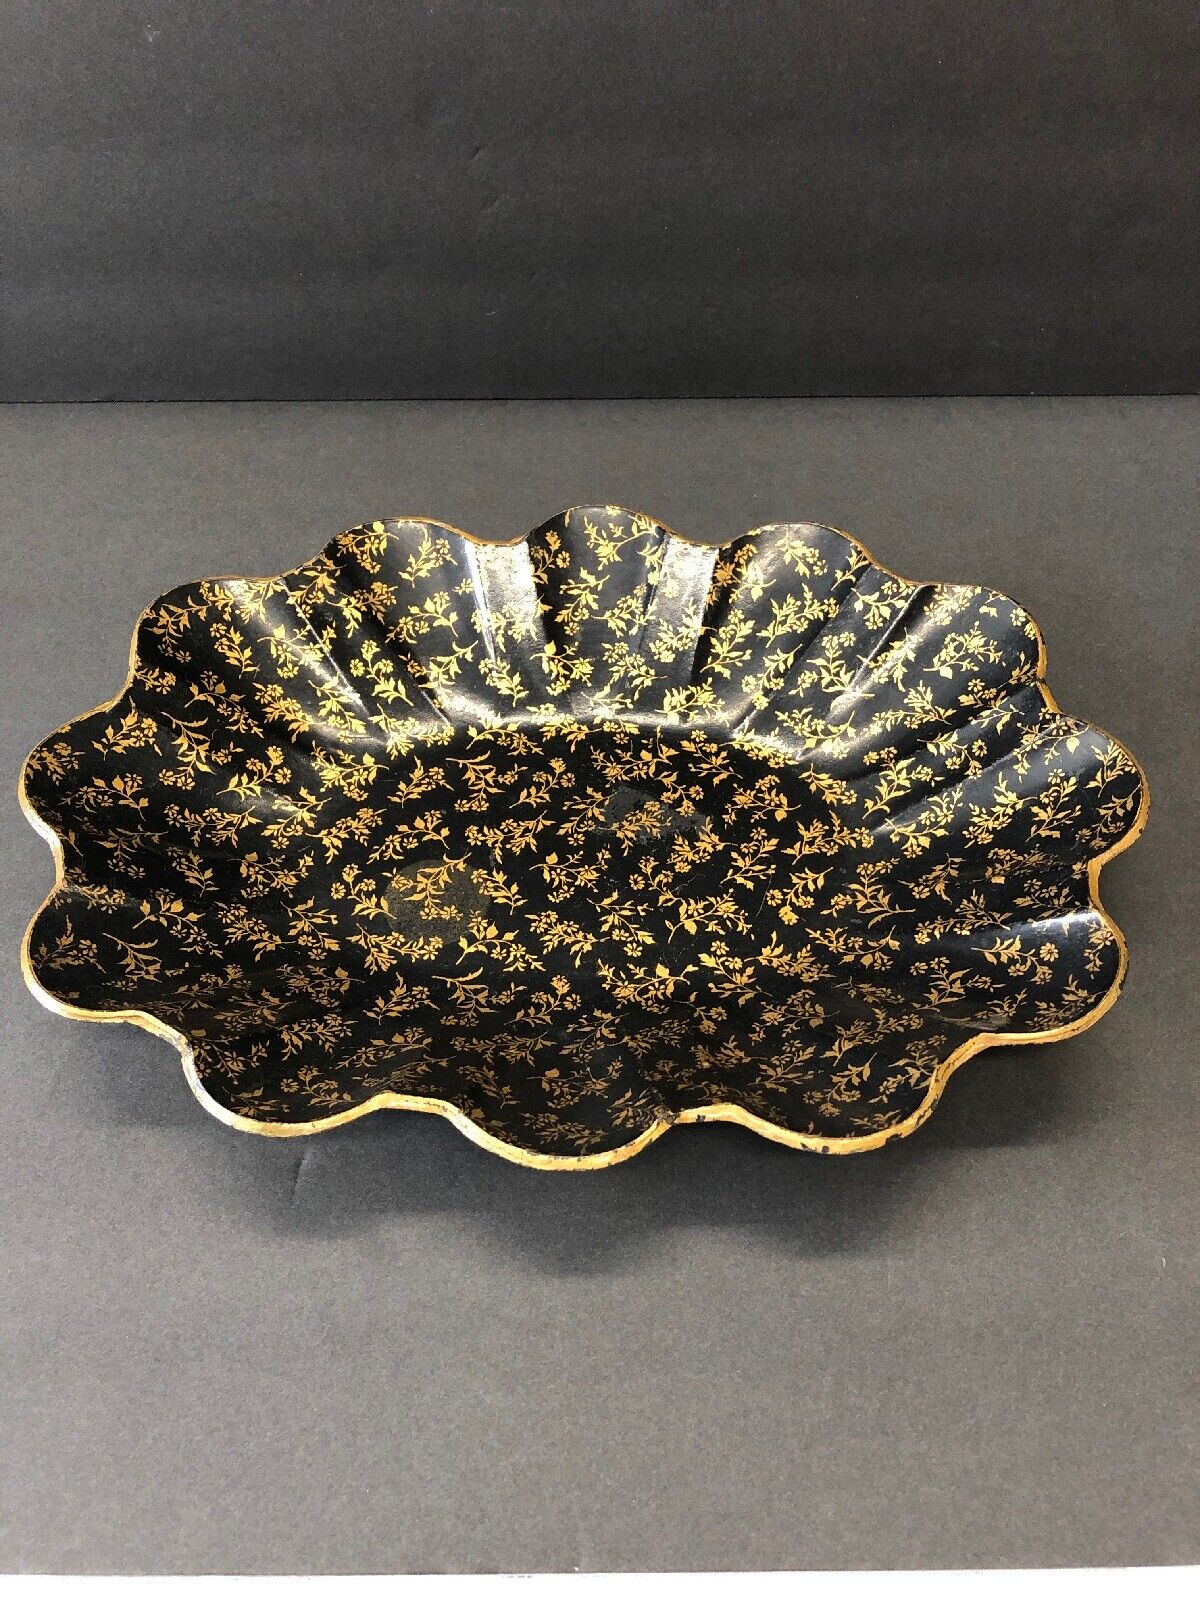 Vintage Antique Toleware Black And Gold Floral Scallop Edge Bowl Centerpiece